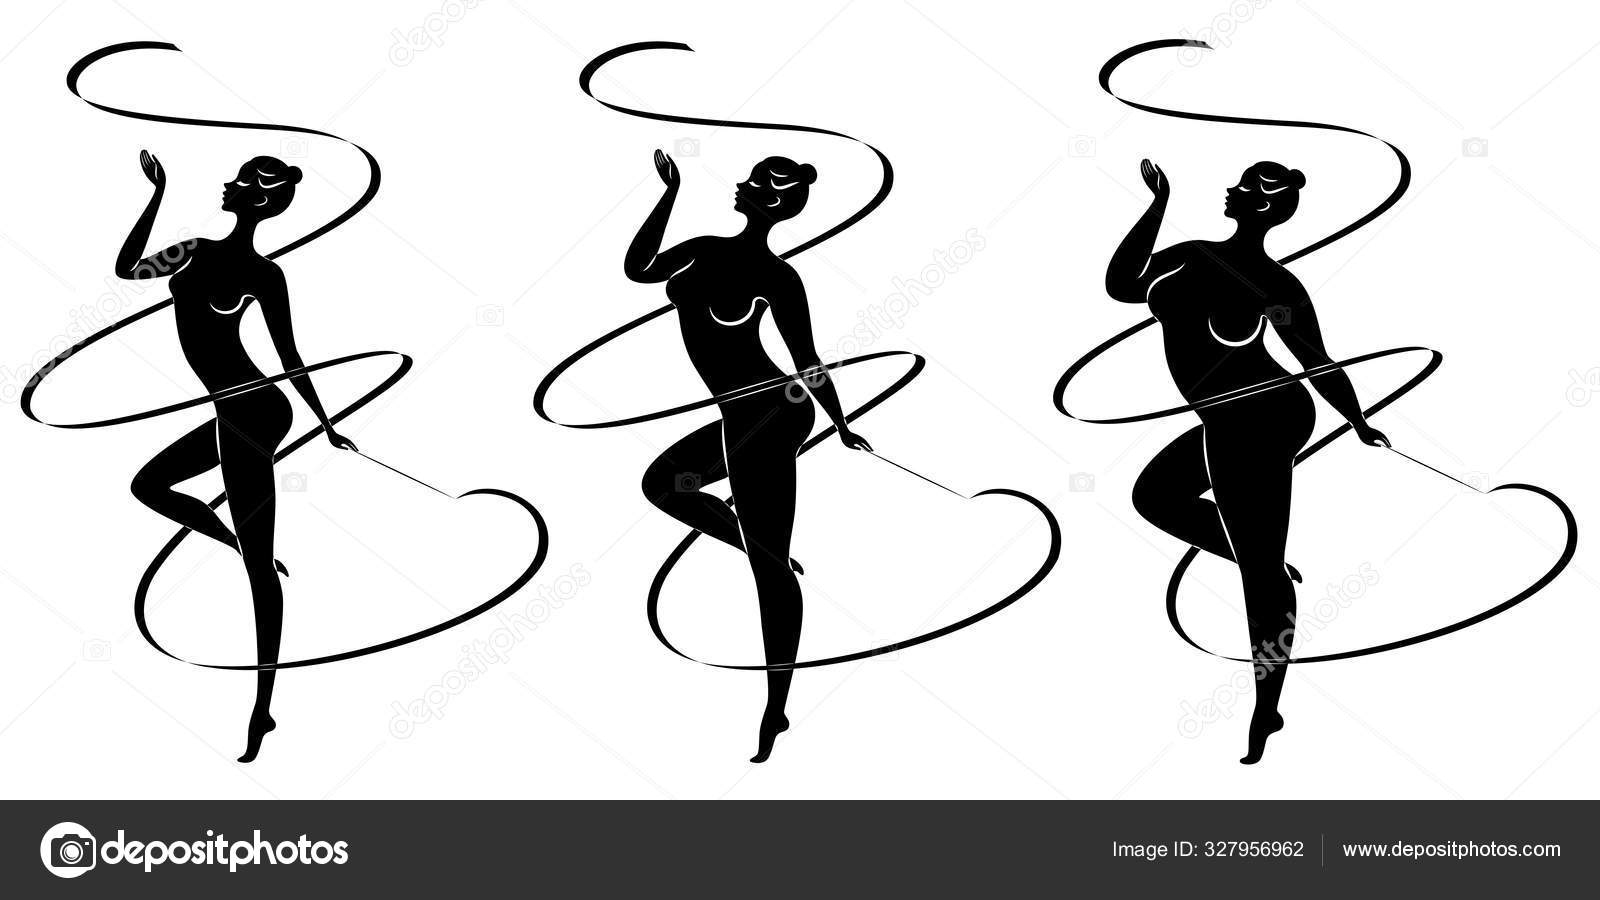 コレクション 可愛いお嬢様のシルエットで リボン付きの新体操に従事 女性は太りすぎでスレンダーガールアスリートです ベクターイラストセット ストックベクター C Pavlenko3014 Gmail Com